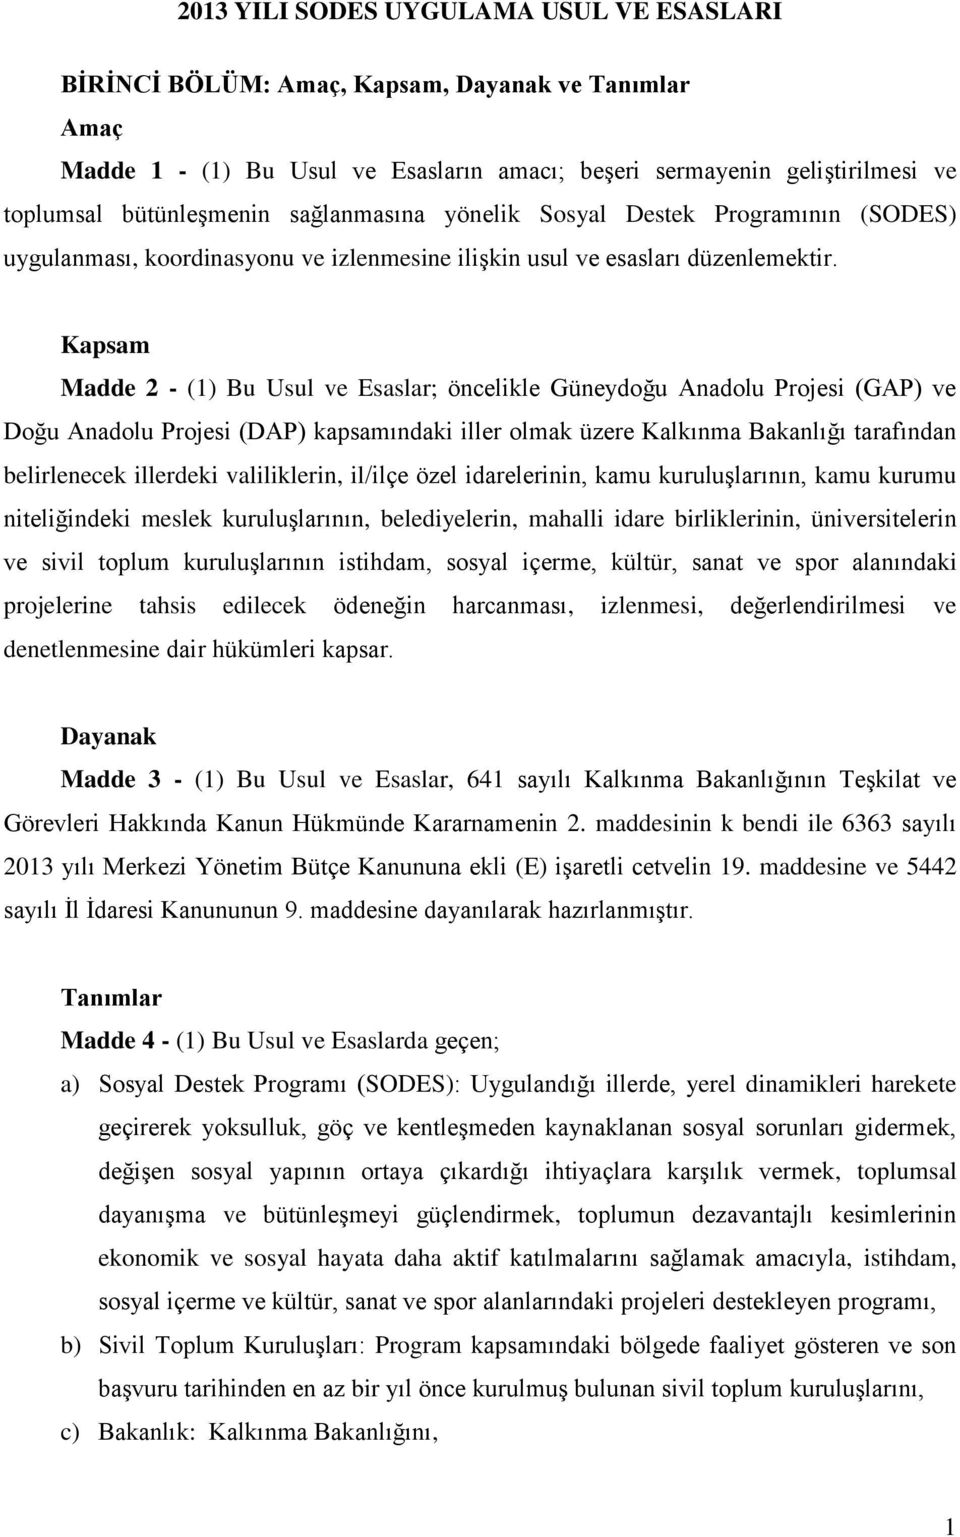 Kapsam Madde 2 - (1) Bu Usul ve Esaslar; öncelikle Güneydoğu Anadolu Projesi (GAP) ve Doğu Anadolu Projesi (DAP) kapsamındaki iller olmak üzere Kalkınma Bakanlığı tarafından belirlenecek illerdeki